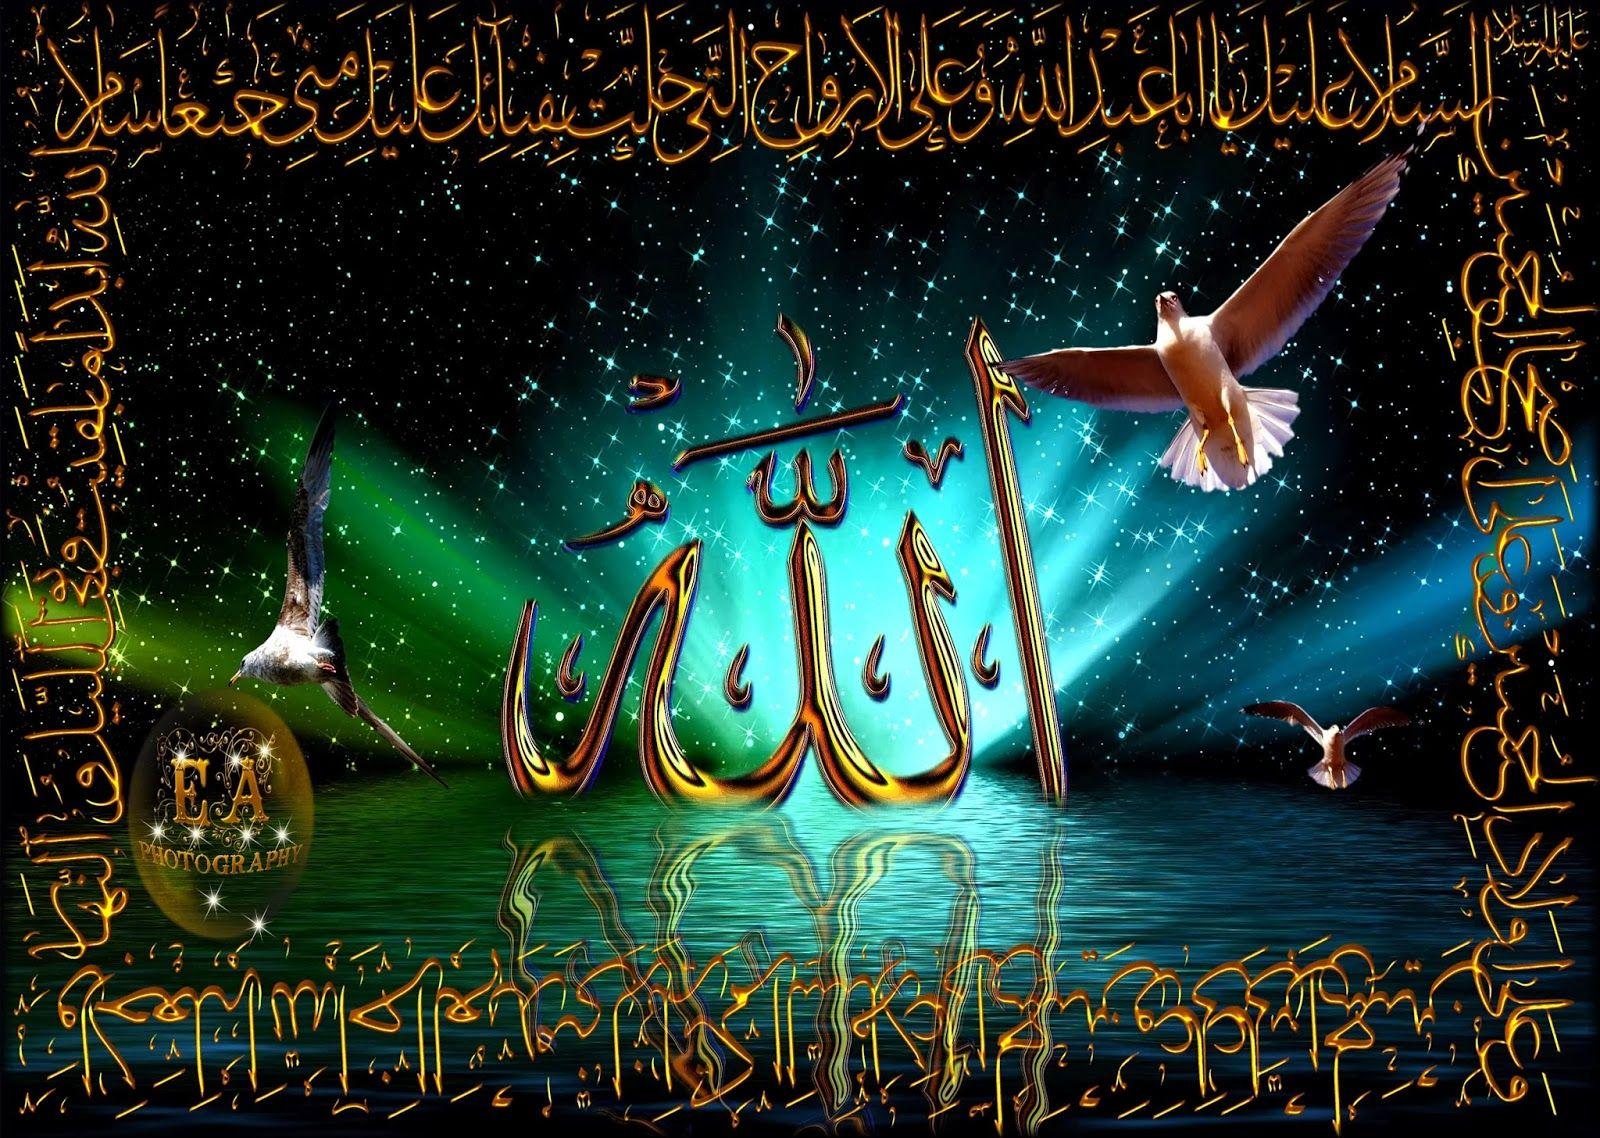 Religion Islam information: Beautifull Wallpaper`s Allah & Muhammad